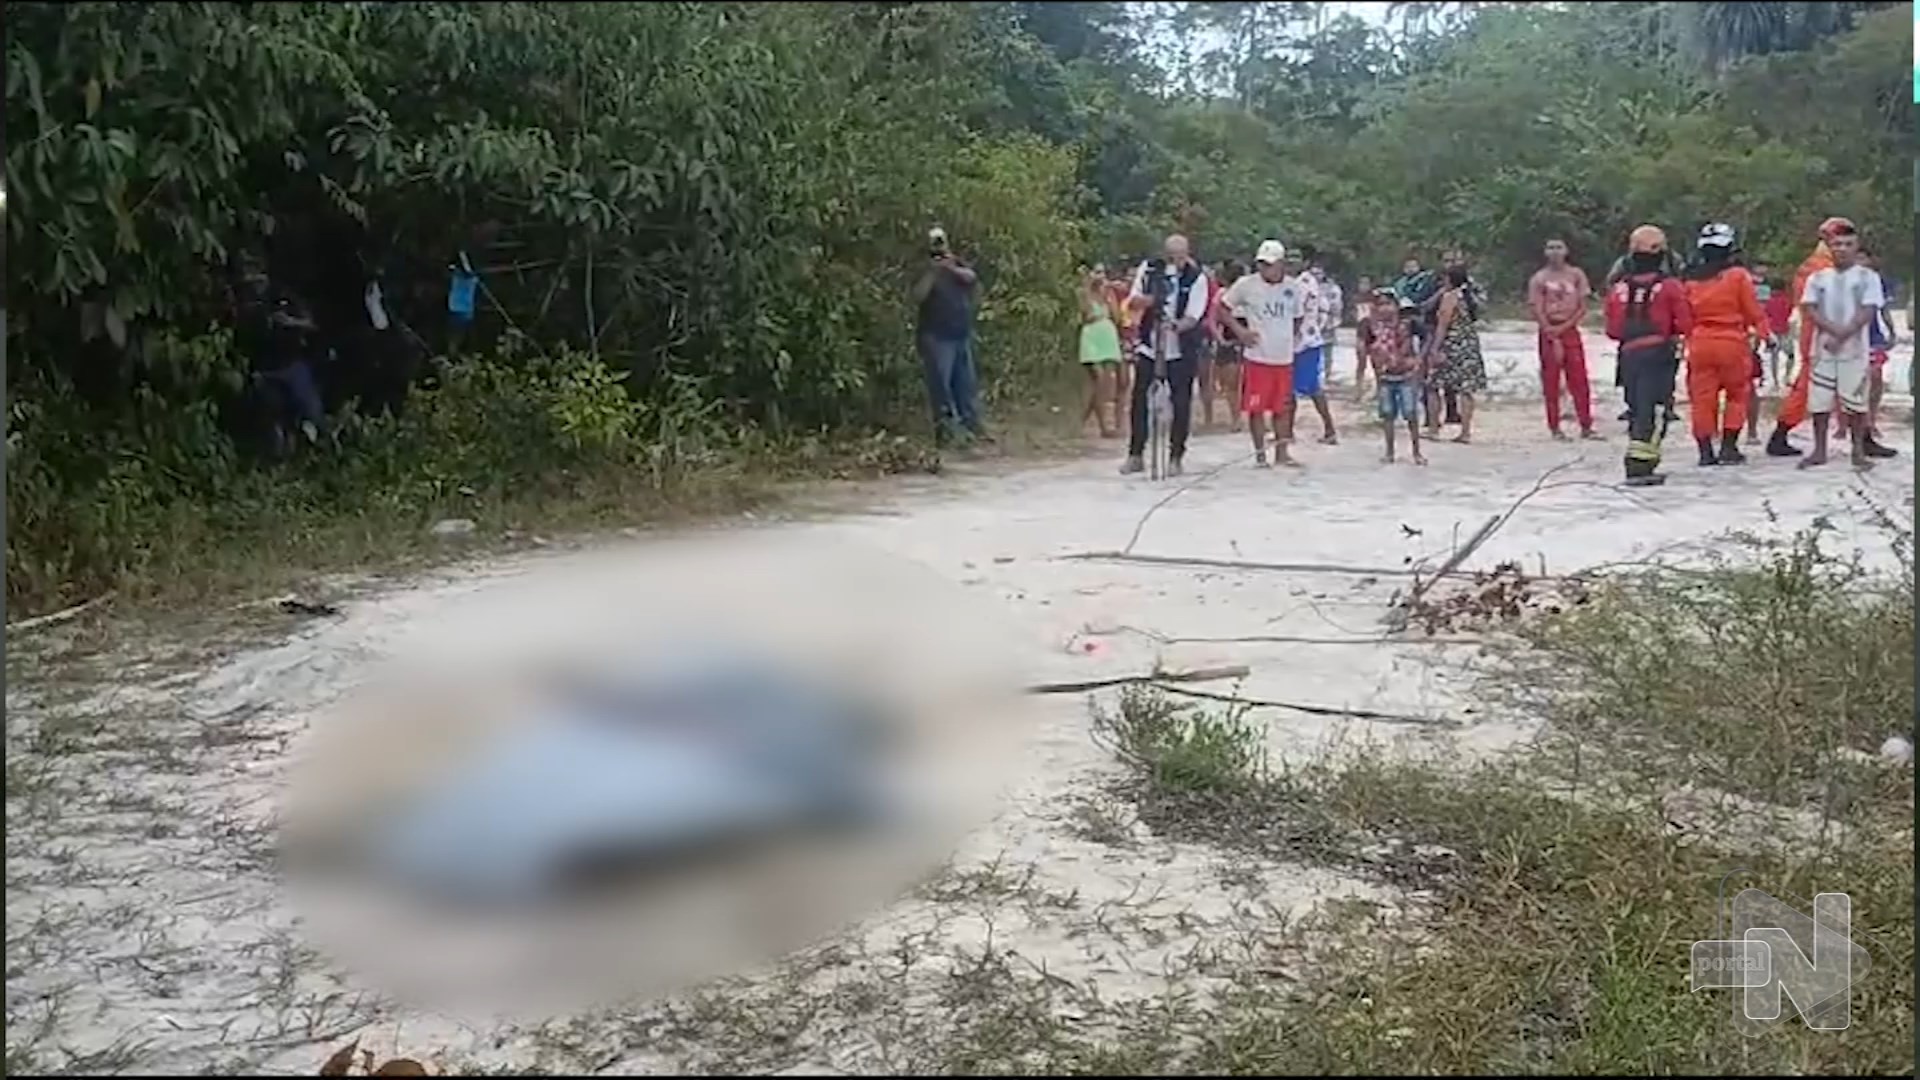 Mulher sai para orar e encontra corpo enterrado em cova rasa em Manaus – Foto: Reprodução/TV Norte Amazonas